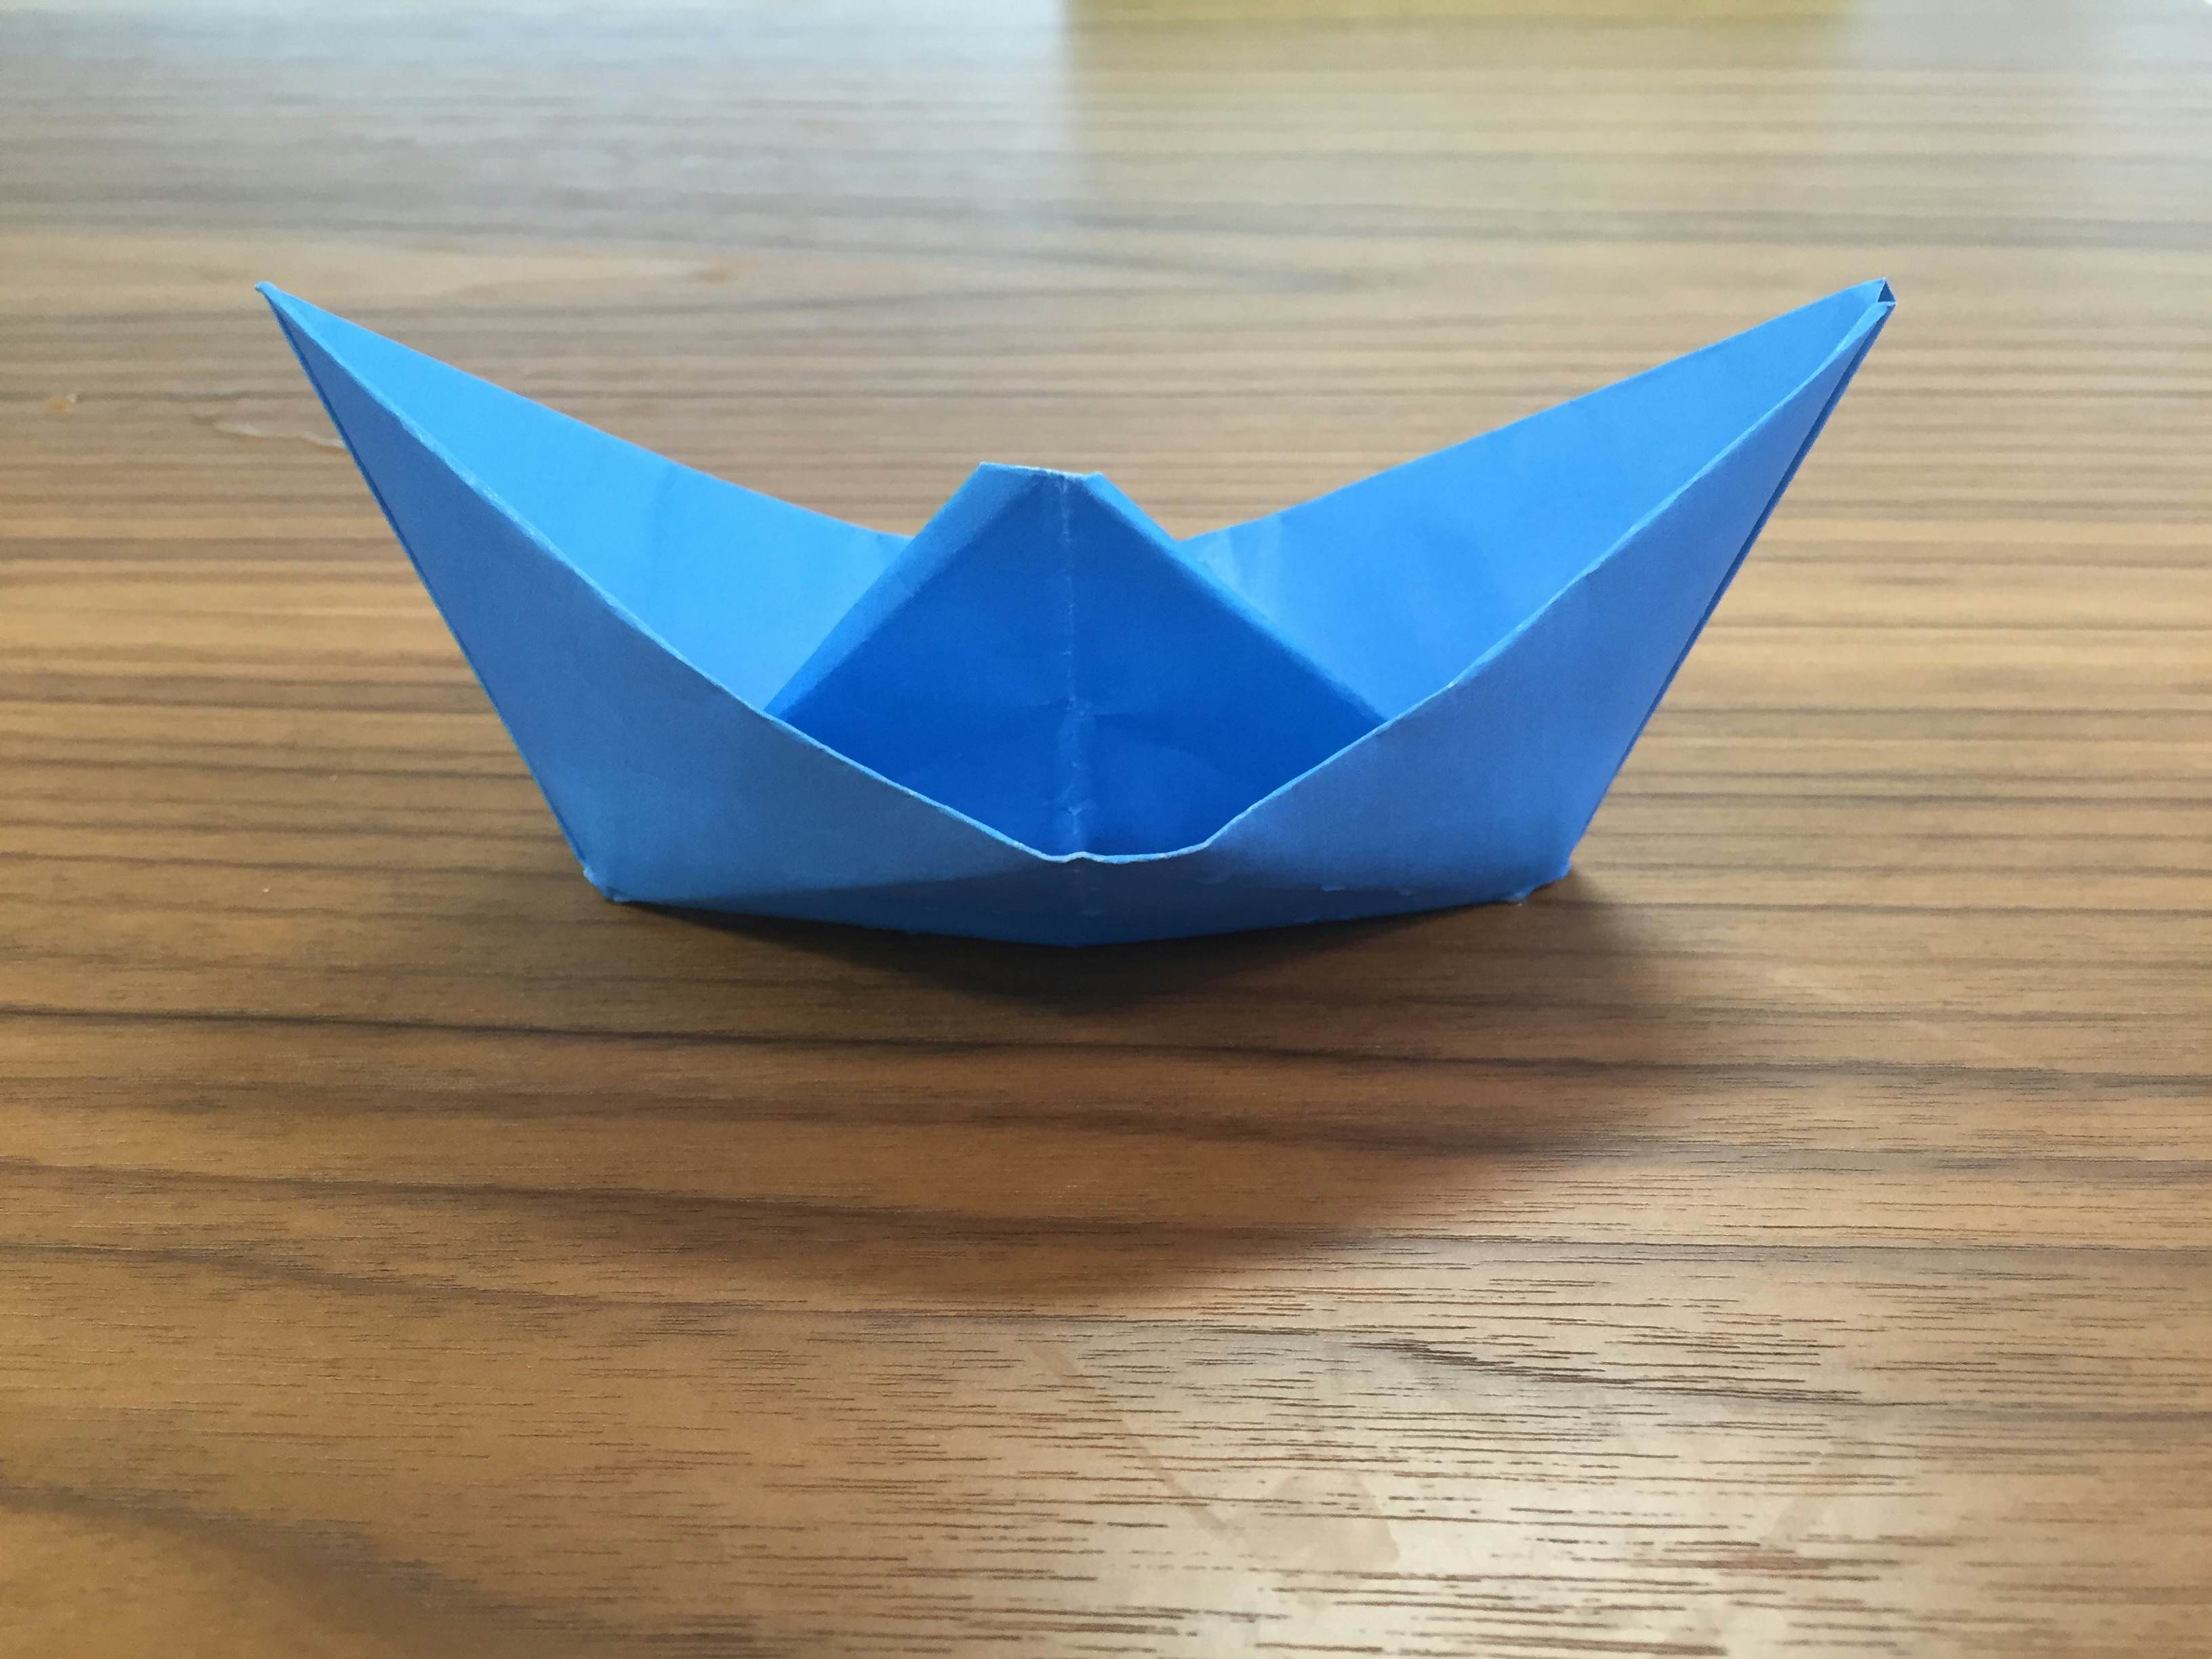 paper boat